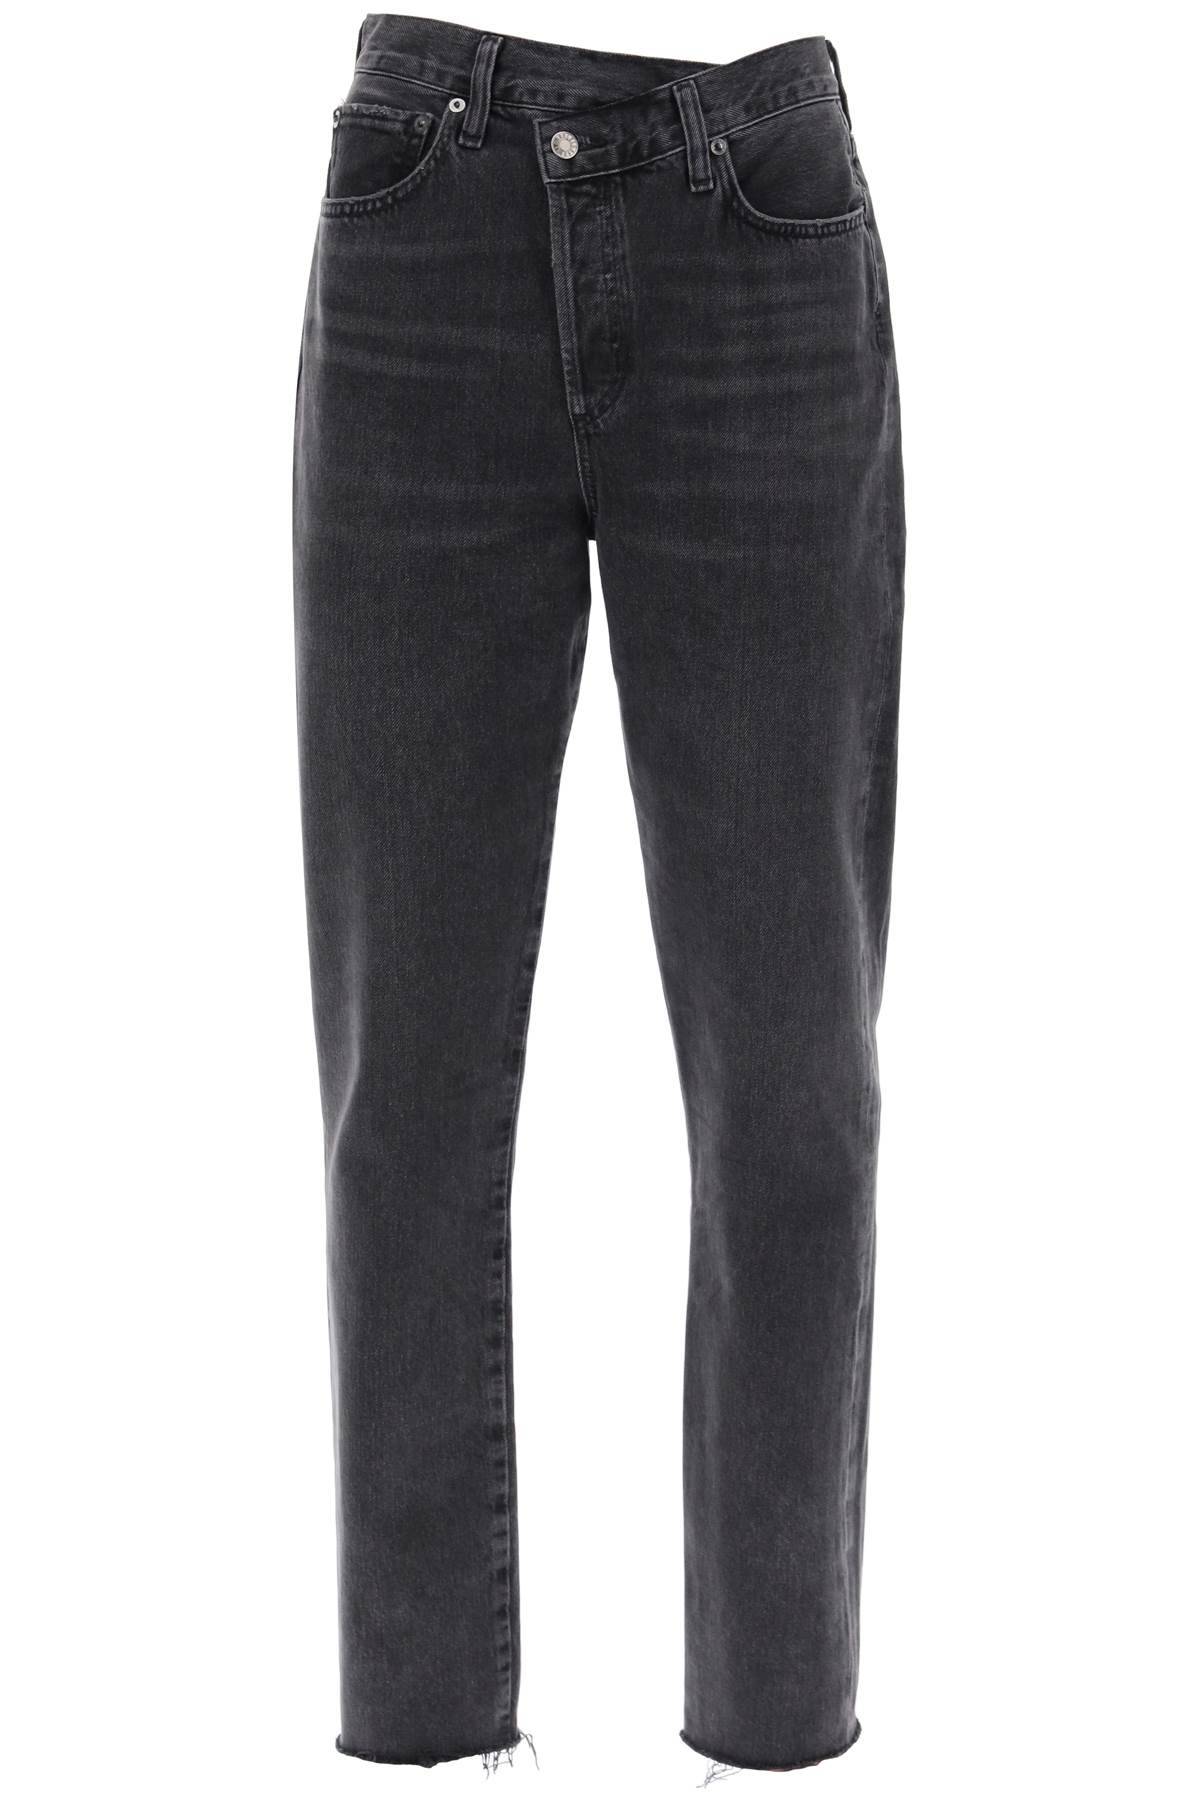 AGOLDE AGOLDE offset waistband jeans